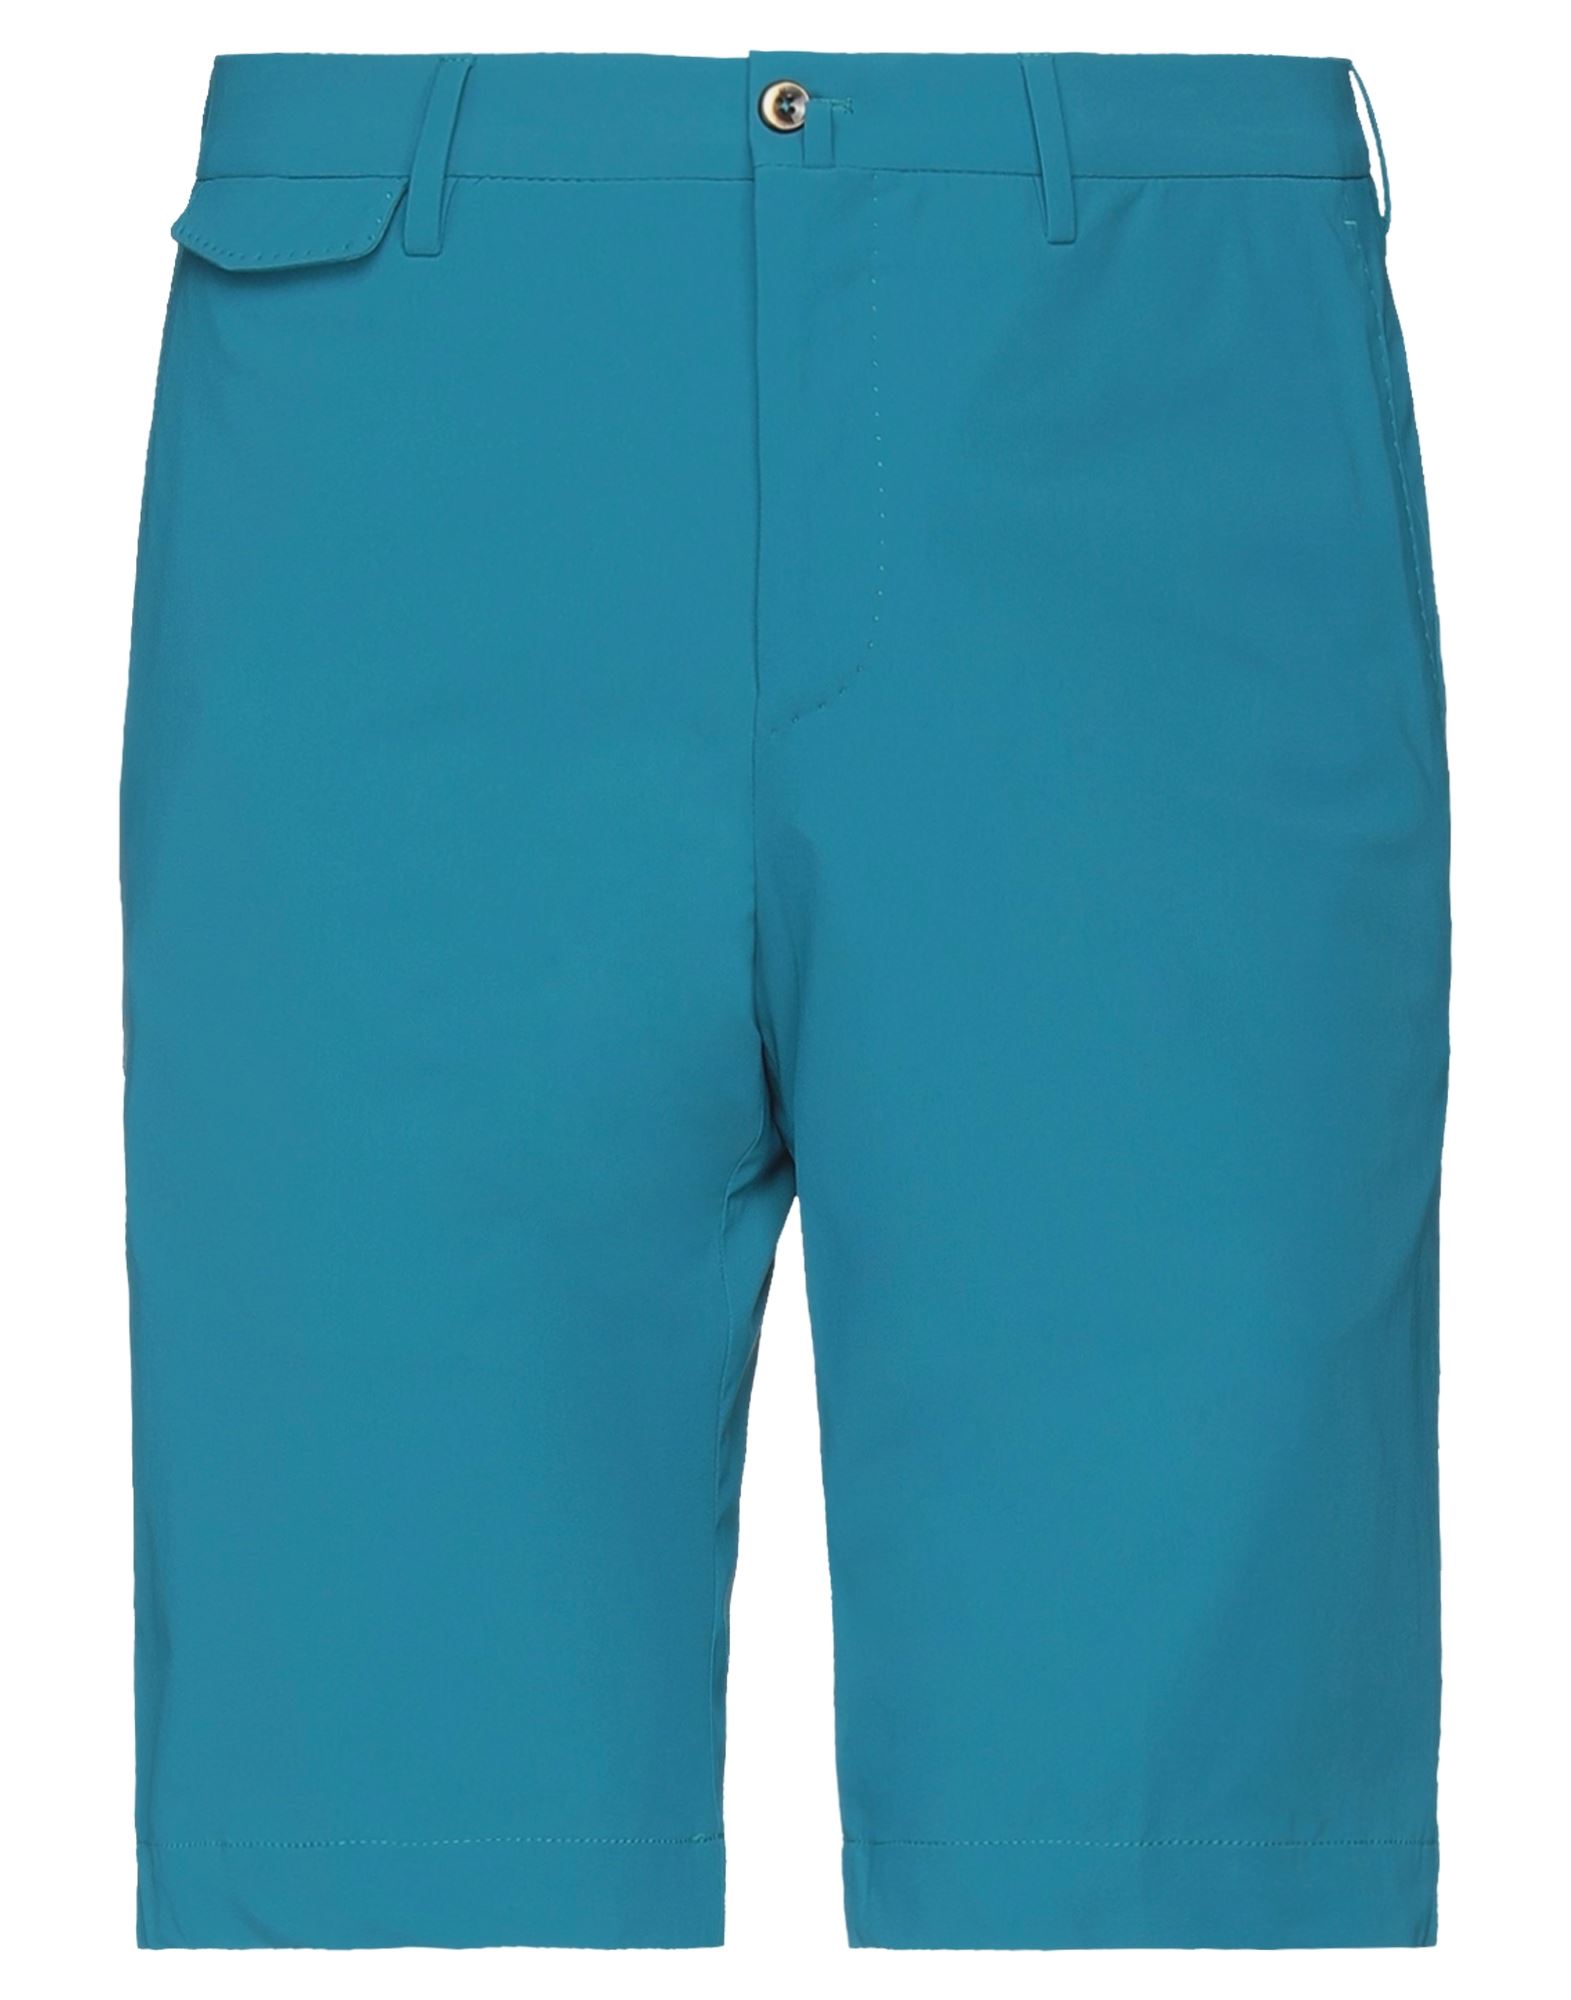 Pt Torino Man Shorts & Bermuda Shorts Turquoise Size 38 Polyamide, Elastane In Blue